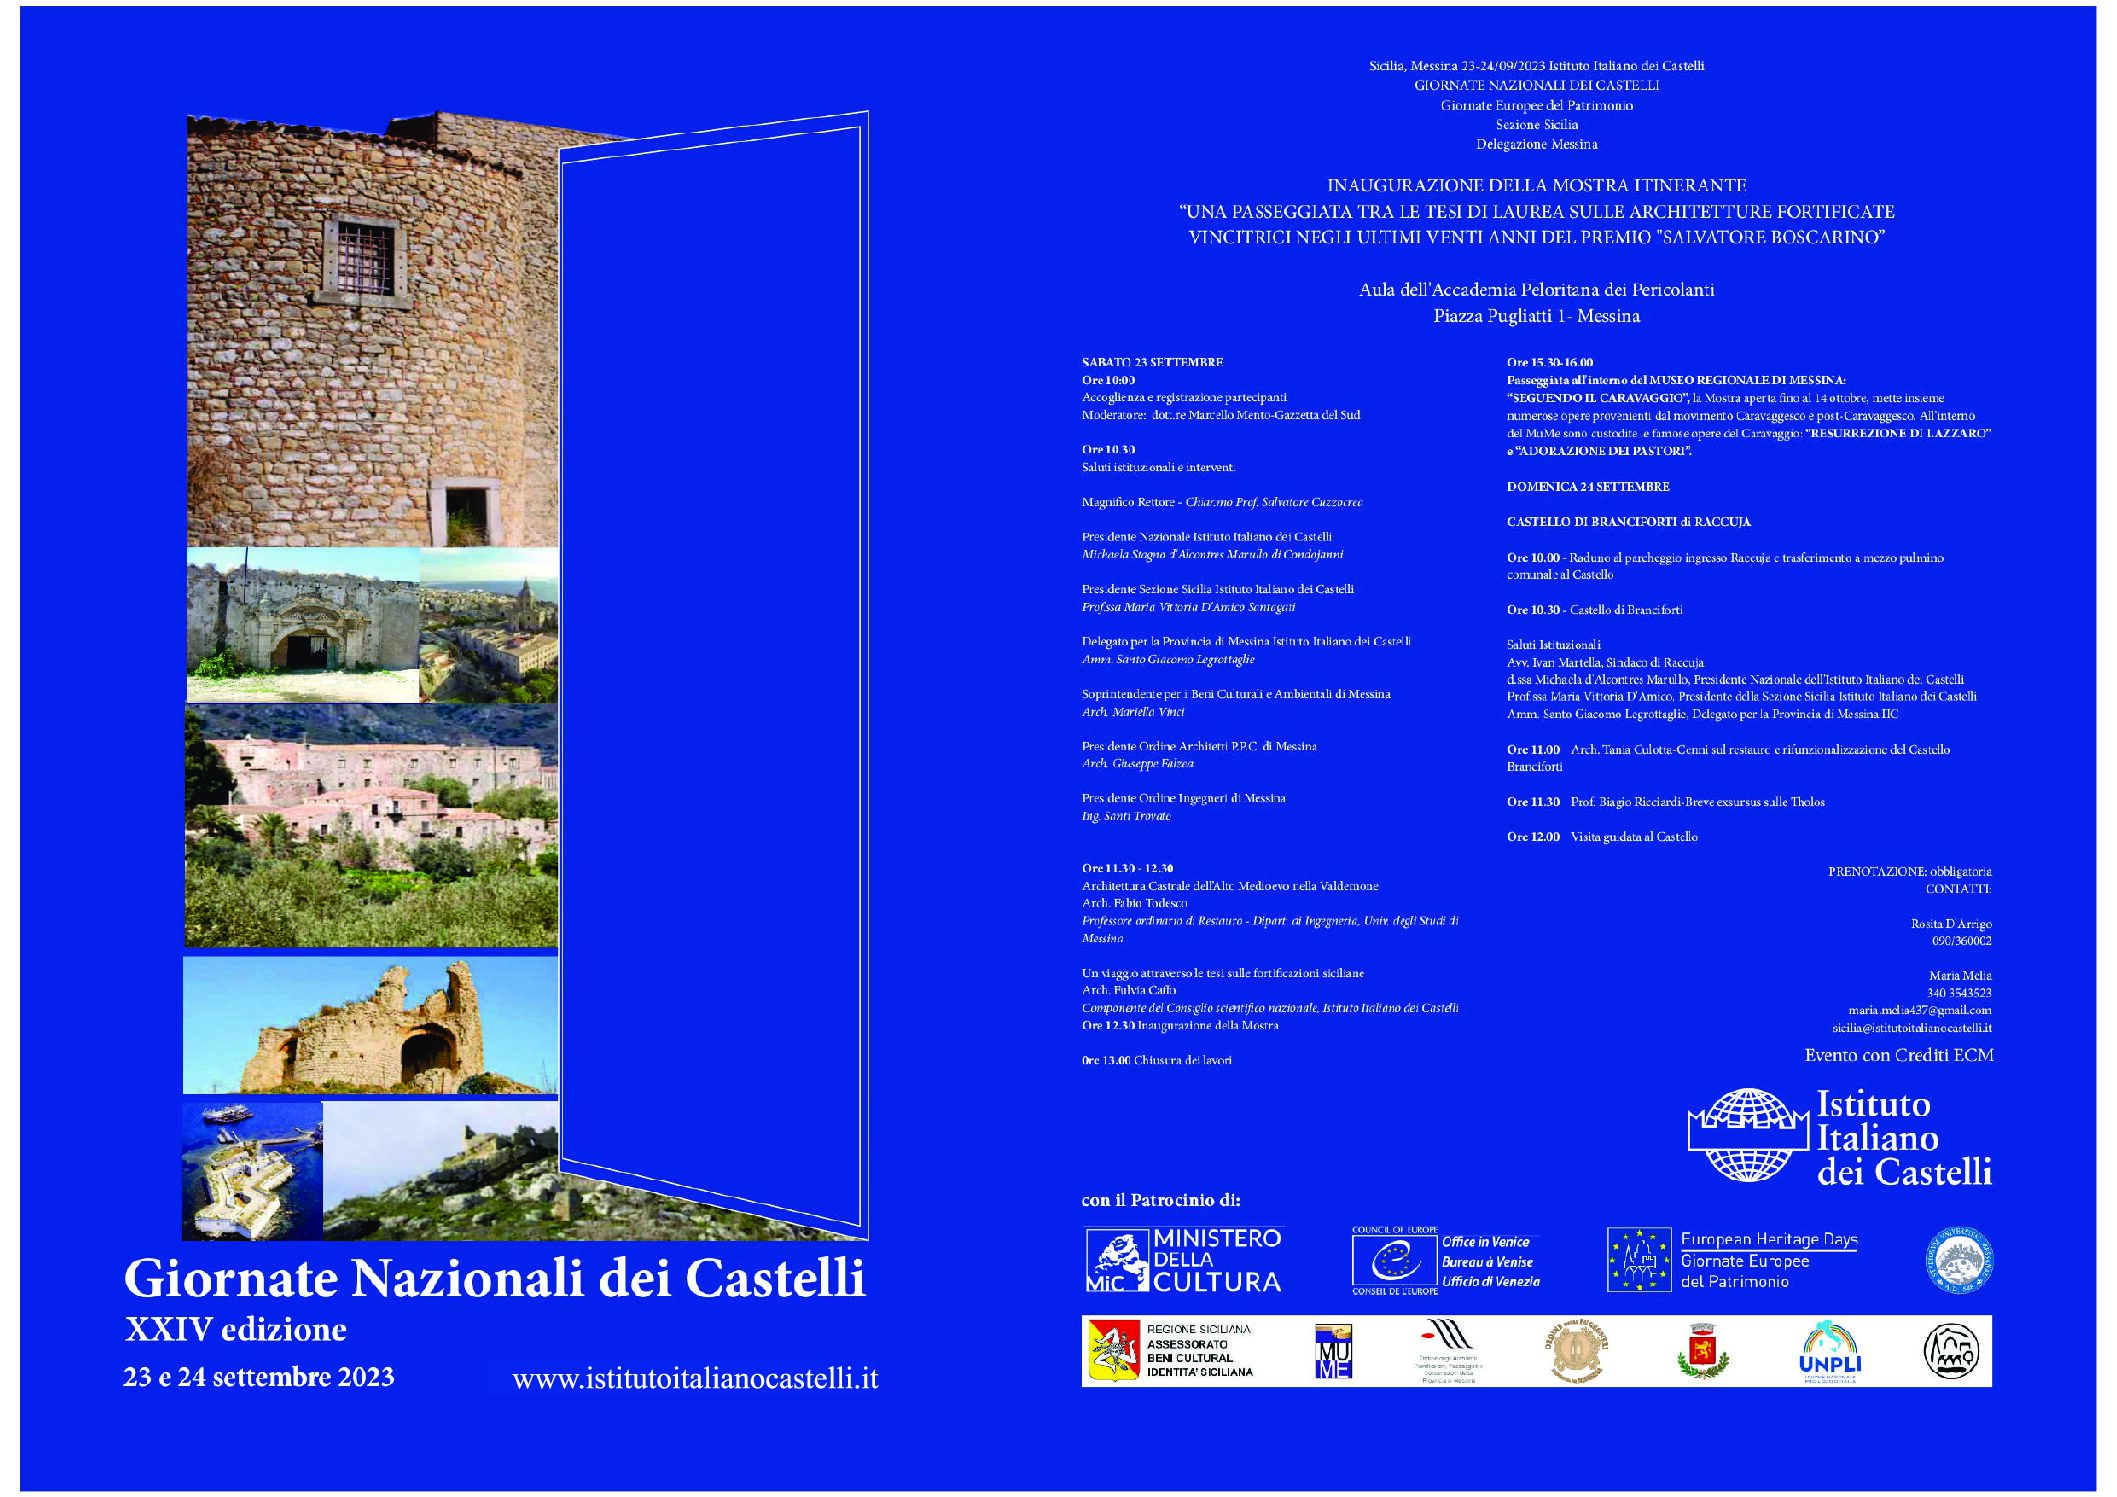 XXIV edizione Giornate nazionali dei Castelli, a Messina passeggiata tra gli studi di laurea sulle architetture fortificate